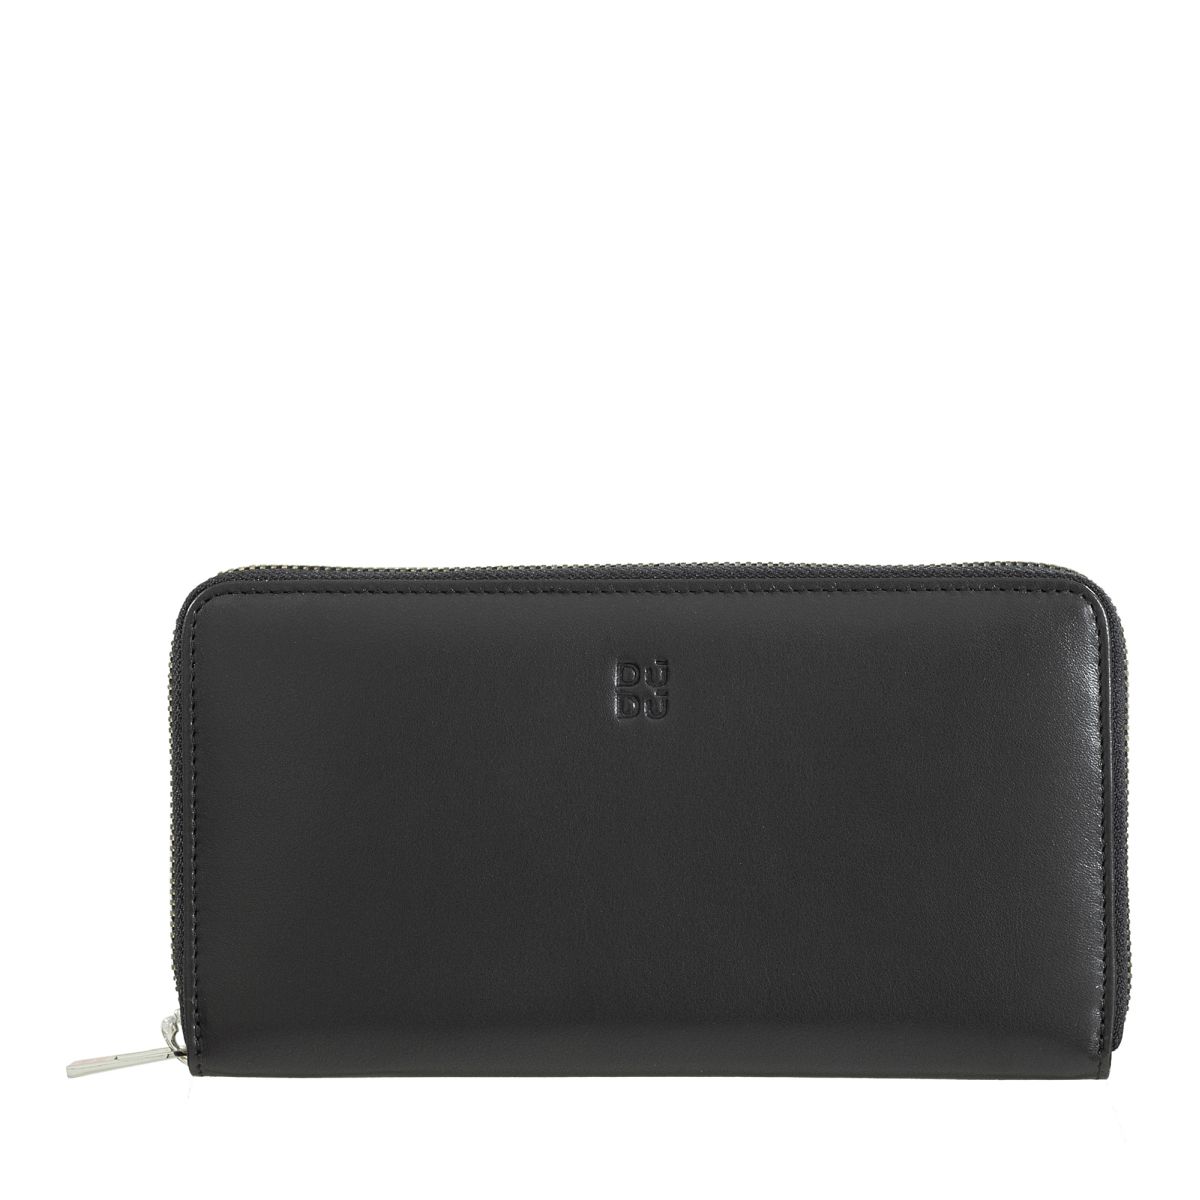 Zip around RFID wallet - Black